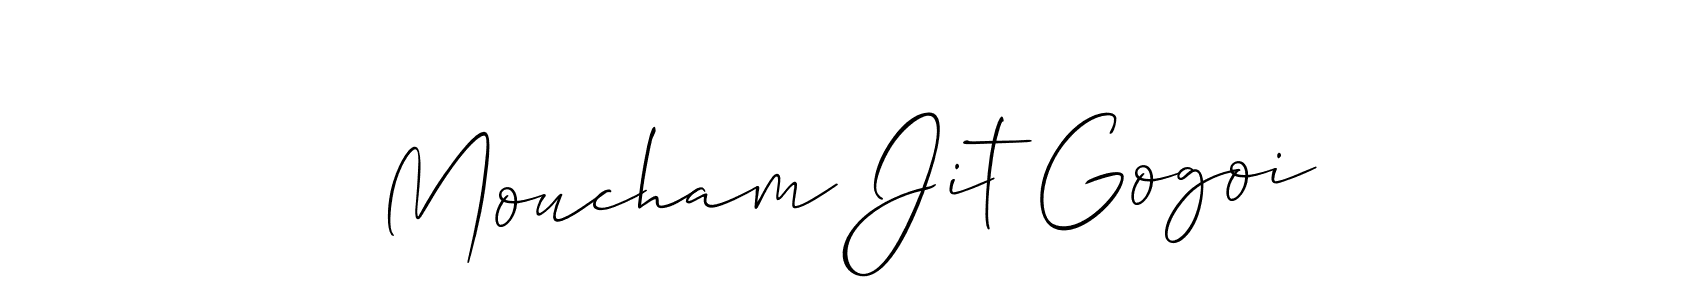 82+ Moucham Jit Gogoi Name Signature Style Ideas | Wonderful Name Signature